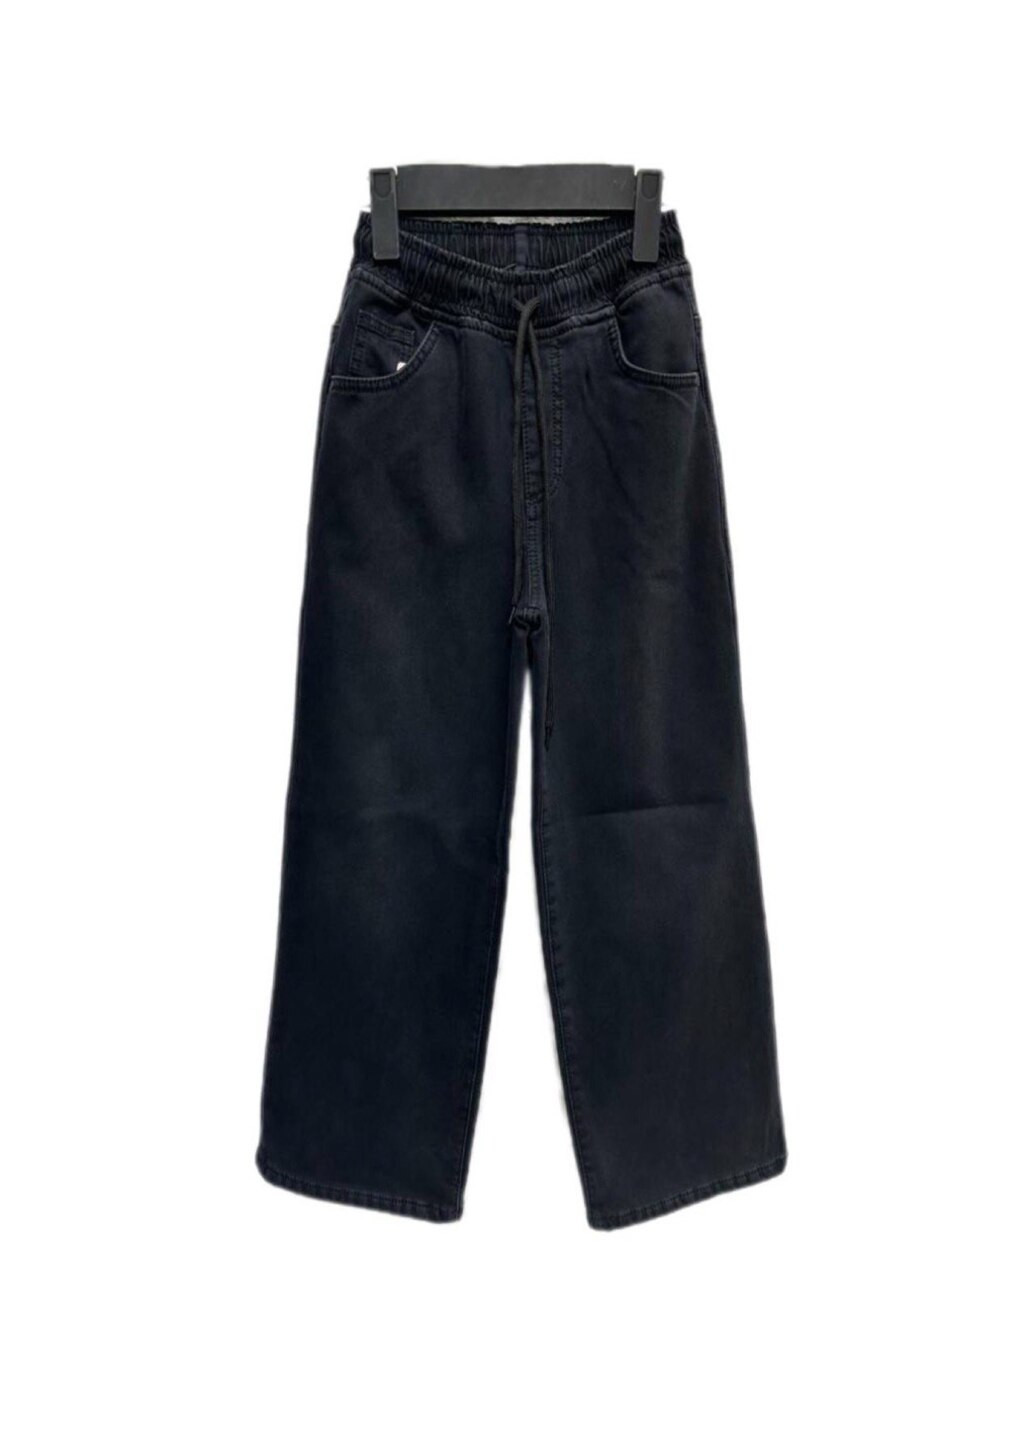 Черные зимние джинсы палаццо для девочки флис Altun